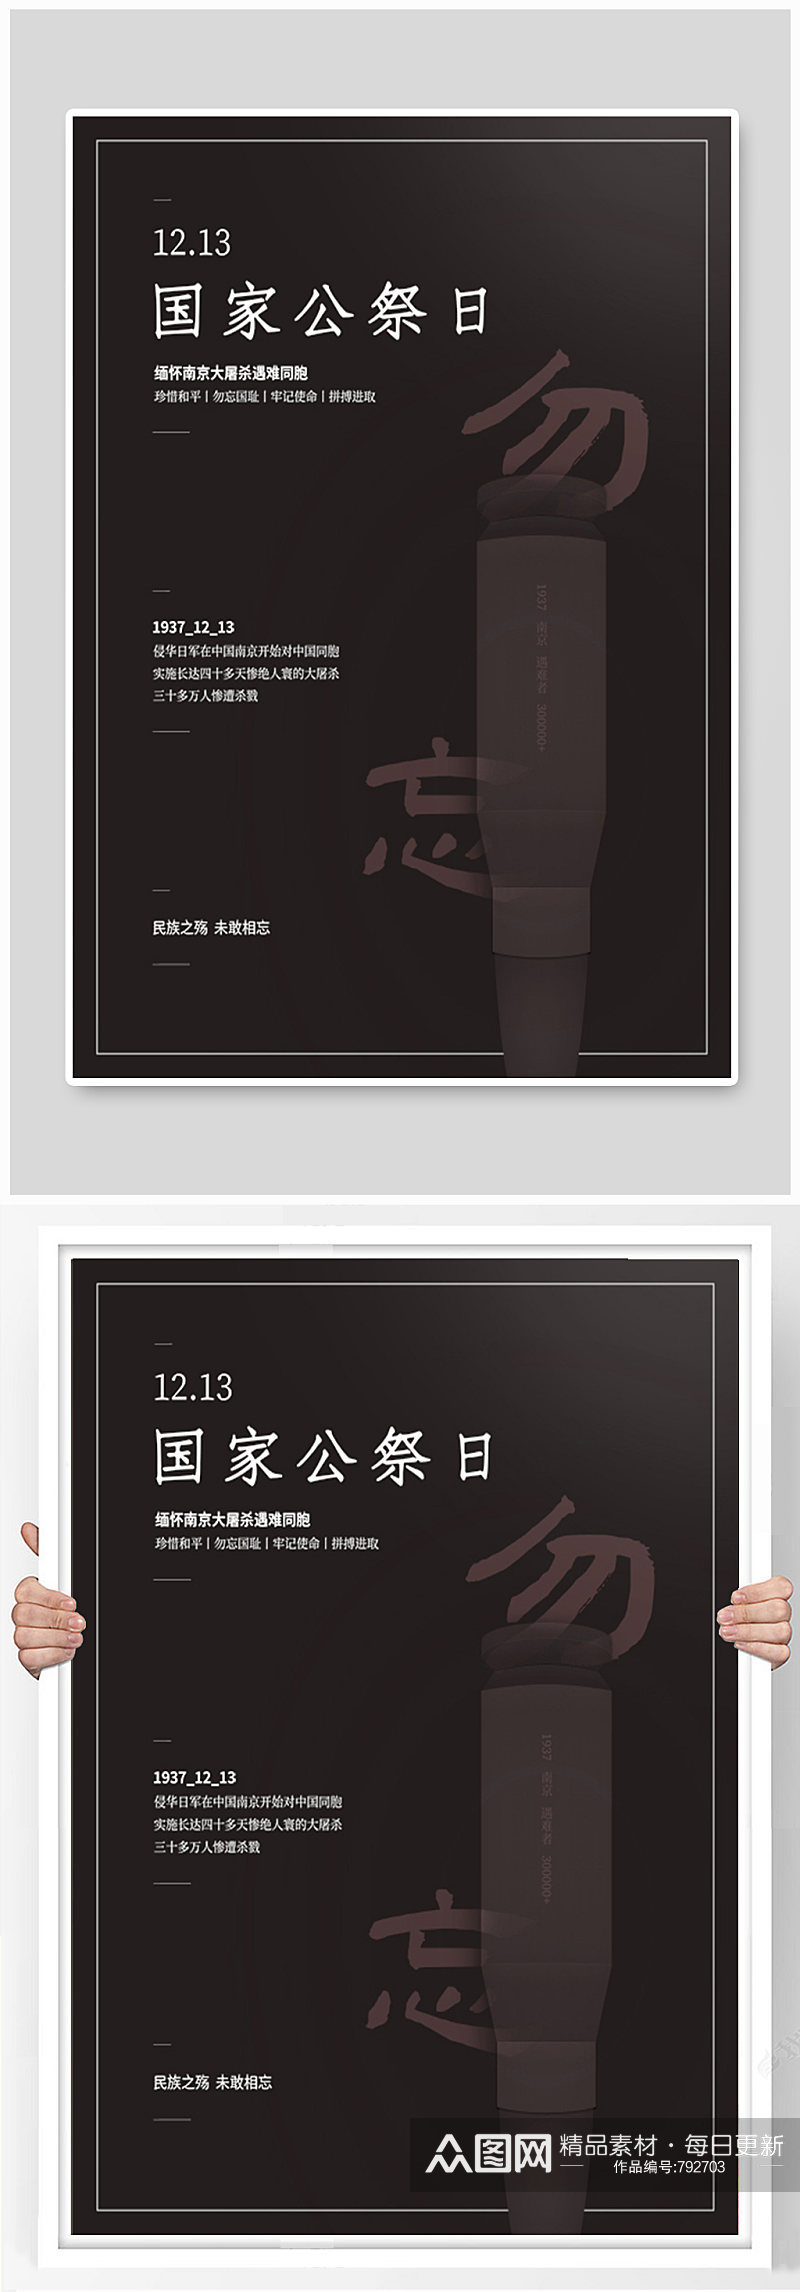 国家公祭日南京大屠杀纪念日公益海报素材